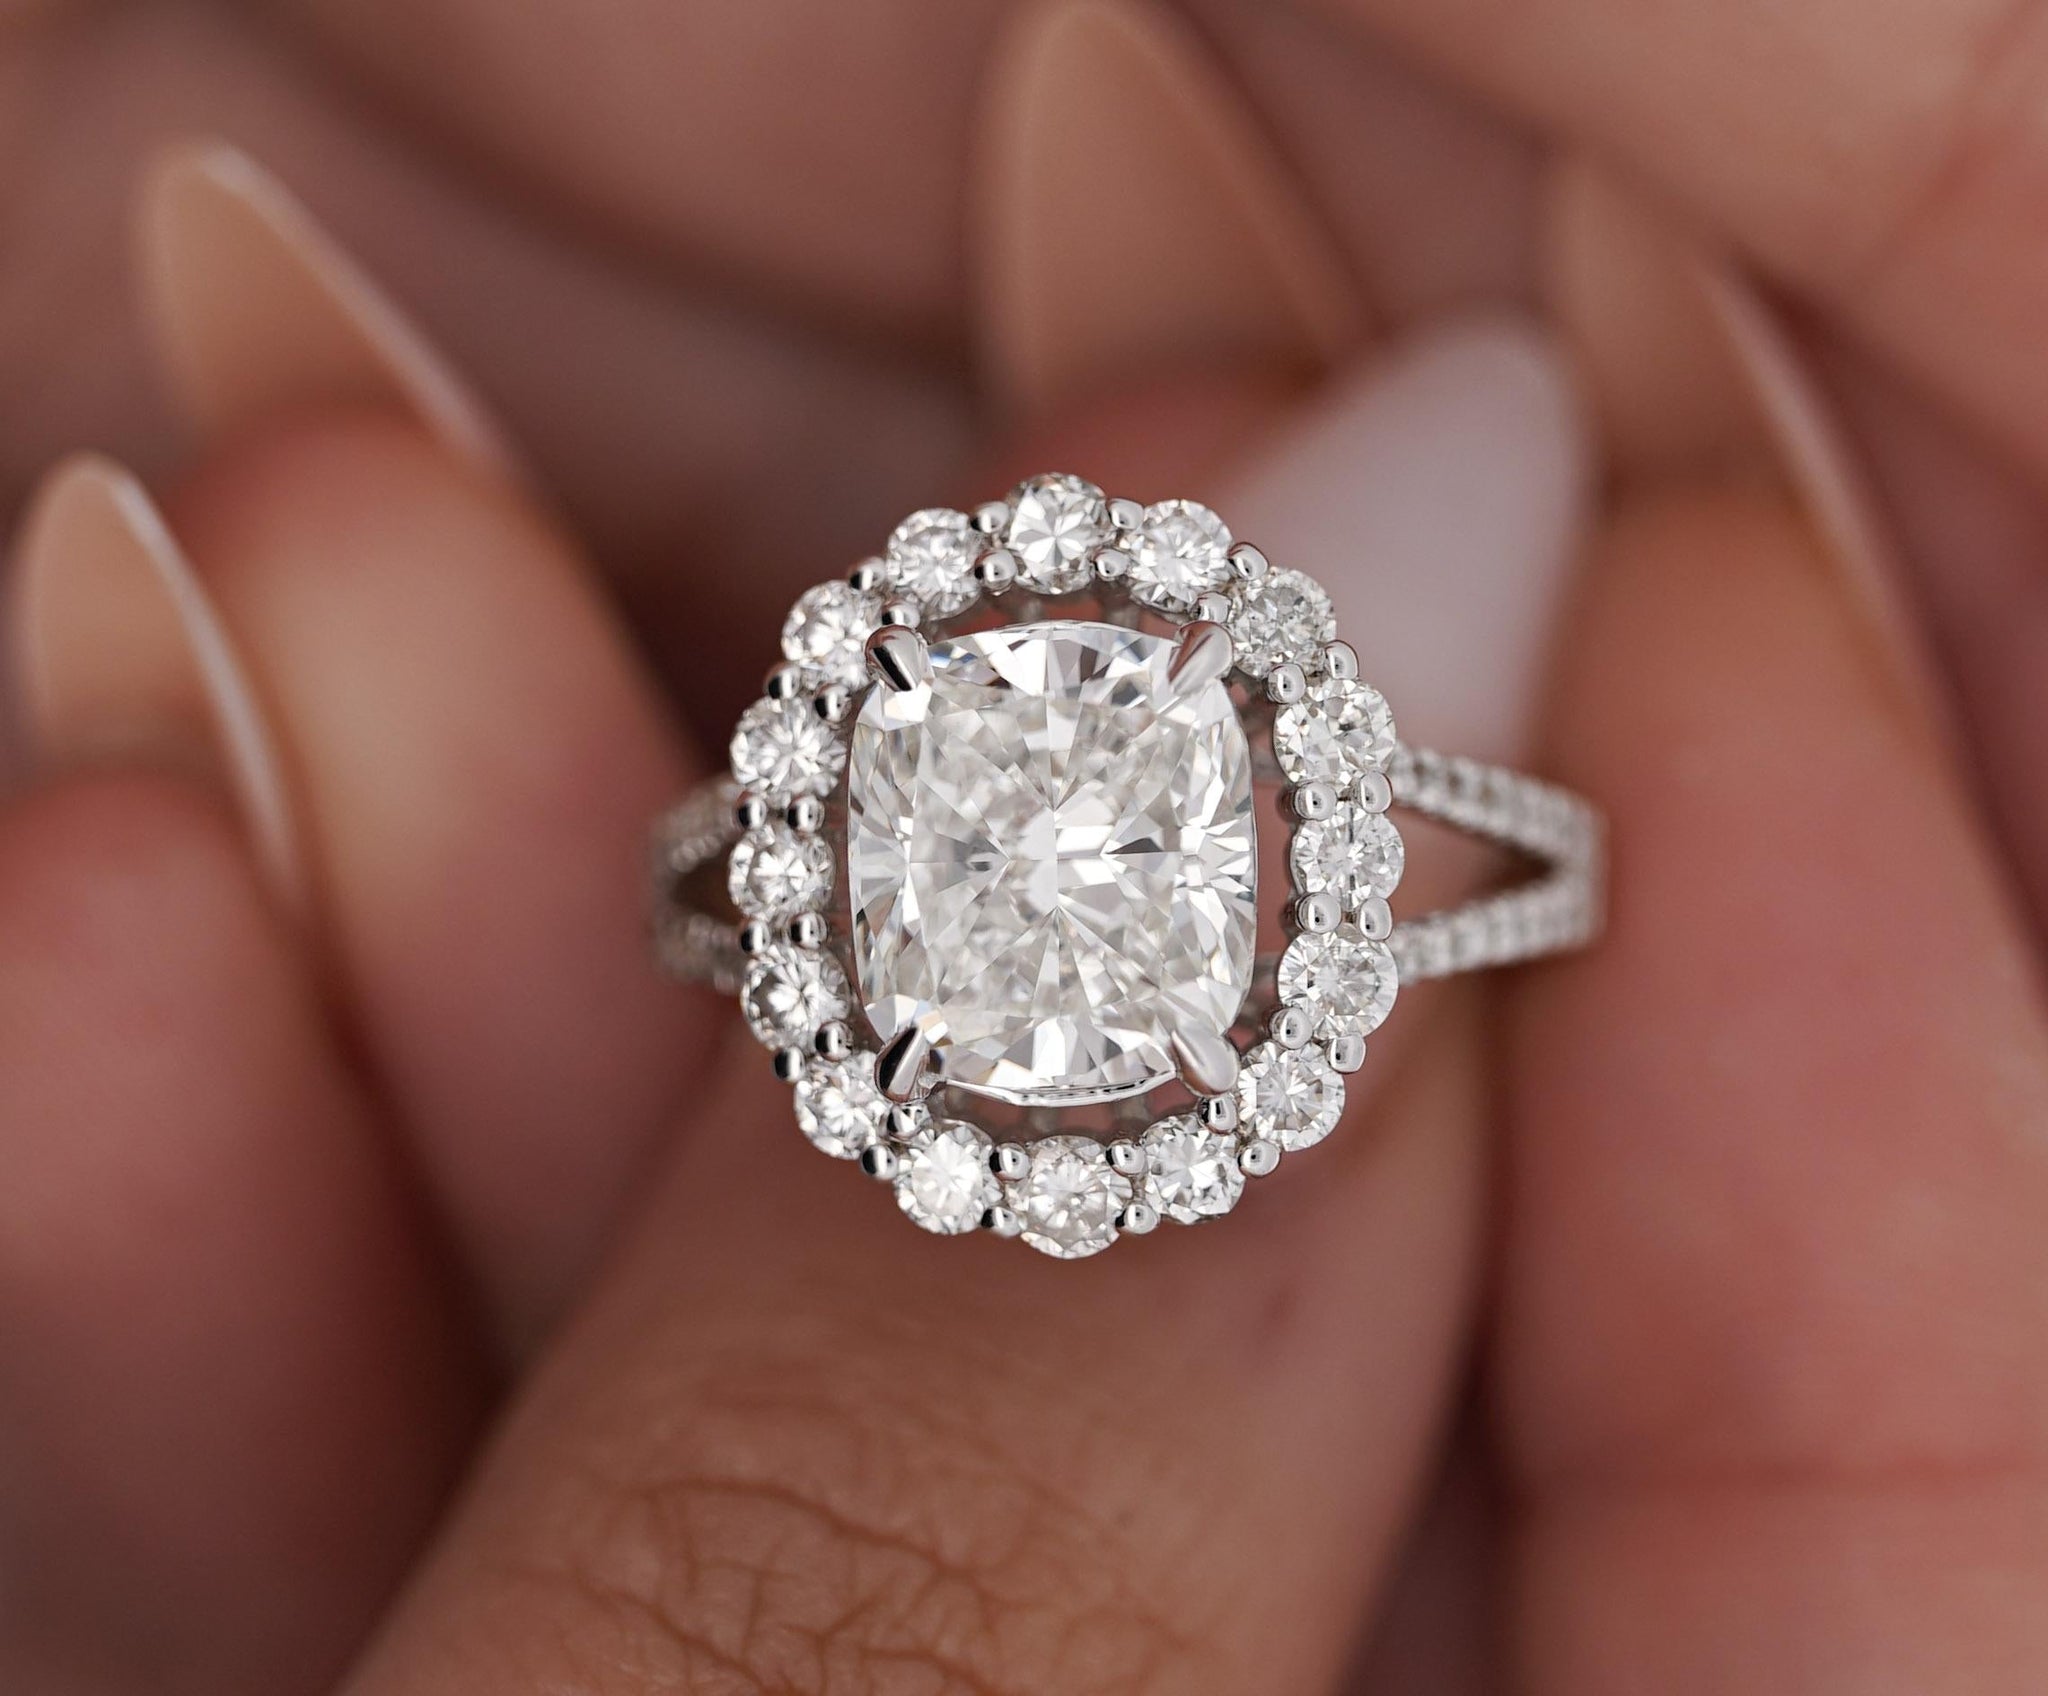 IGI Certified 4.91 Carat TW Lab Grown Diamond Engagement Ring